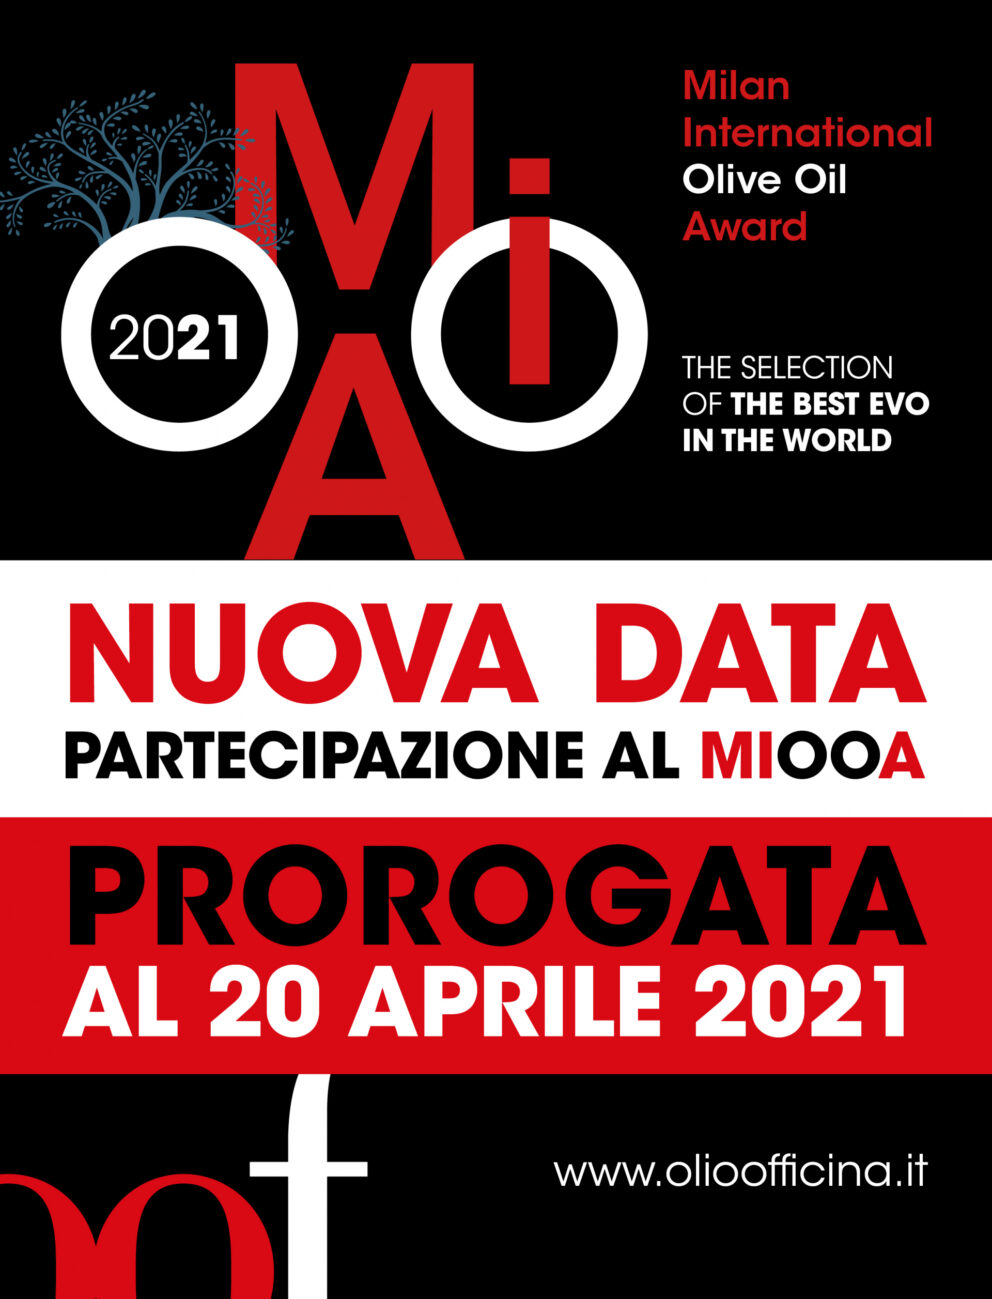 Proroga fino al 20 aprile per la seconda edizione del Milan International Olive Oil Award